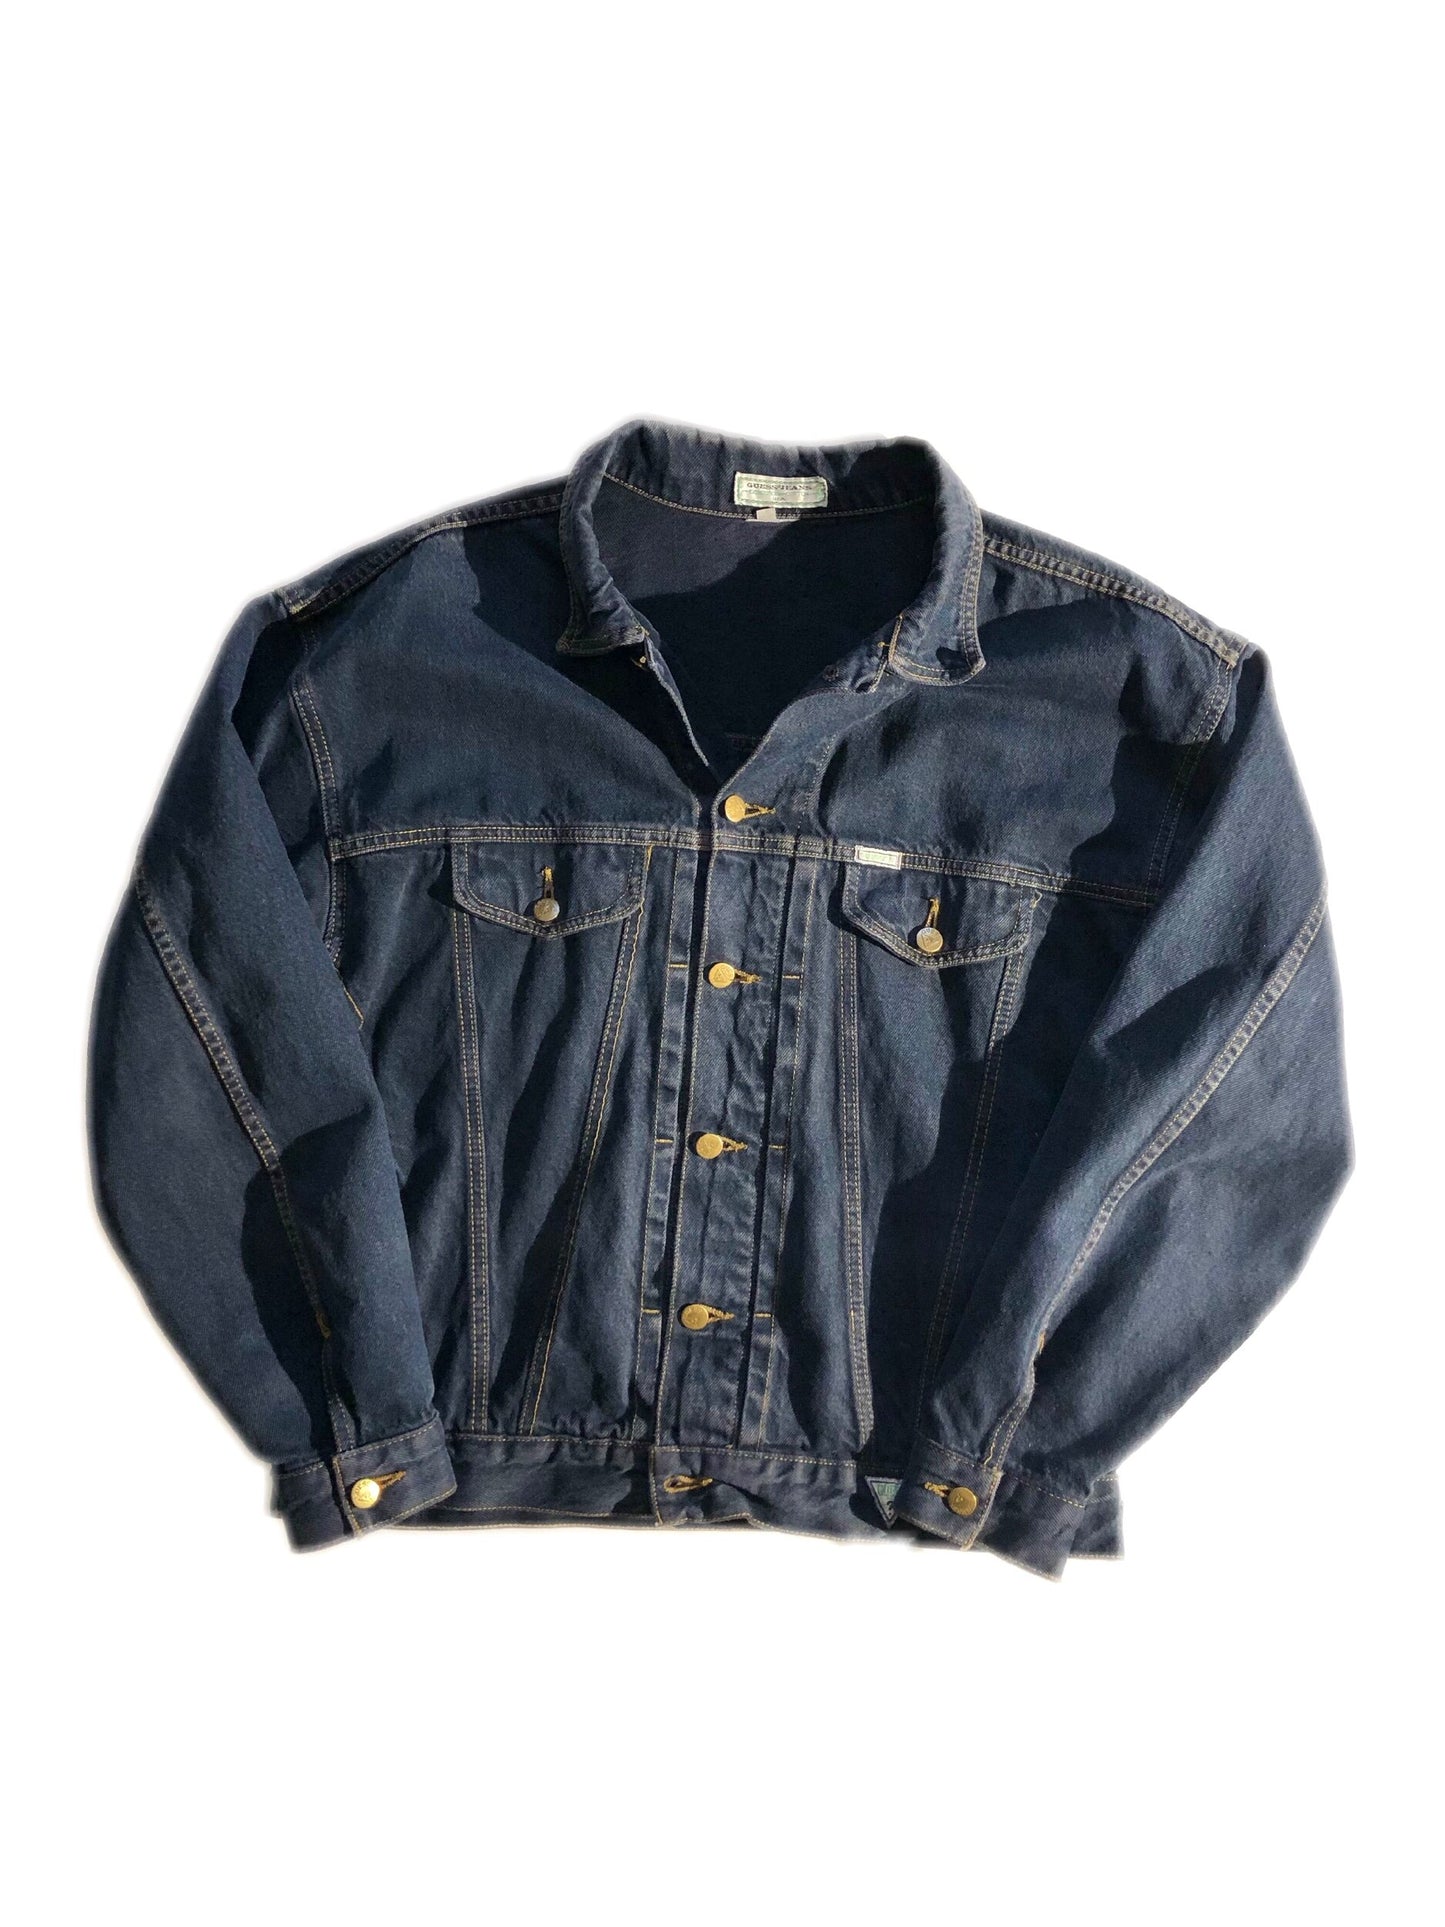 Vintage Guess Denim Jacket